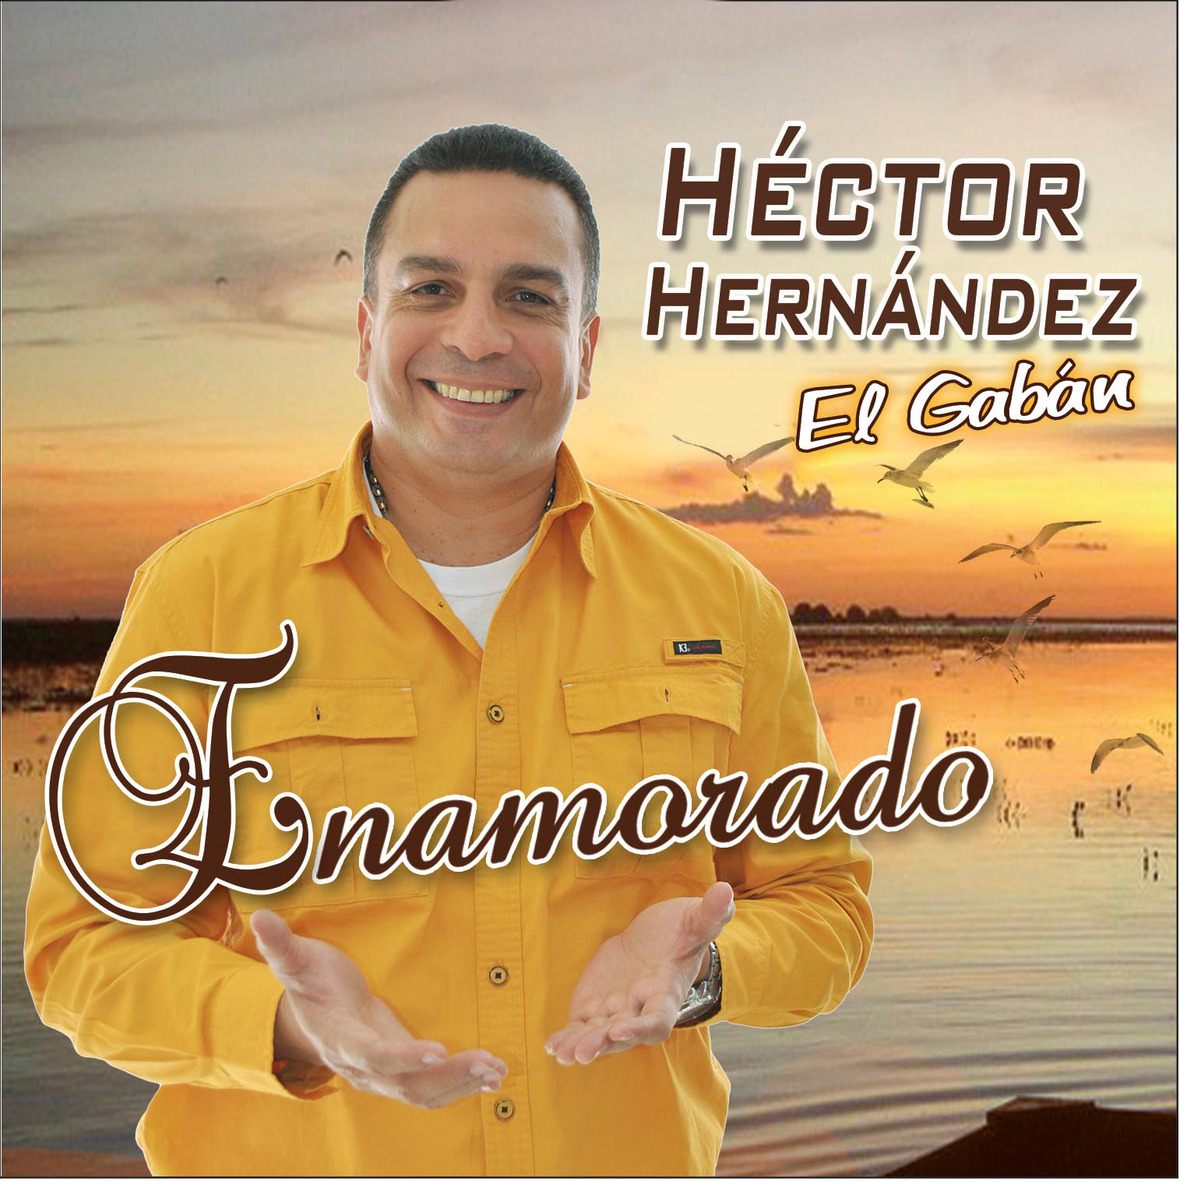 Héctor Hernández “El Gabán” se impone con Enamorado